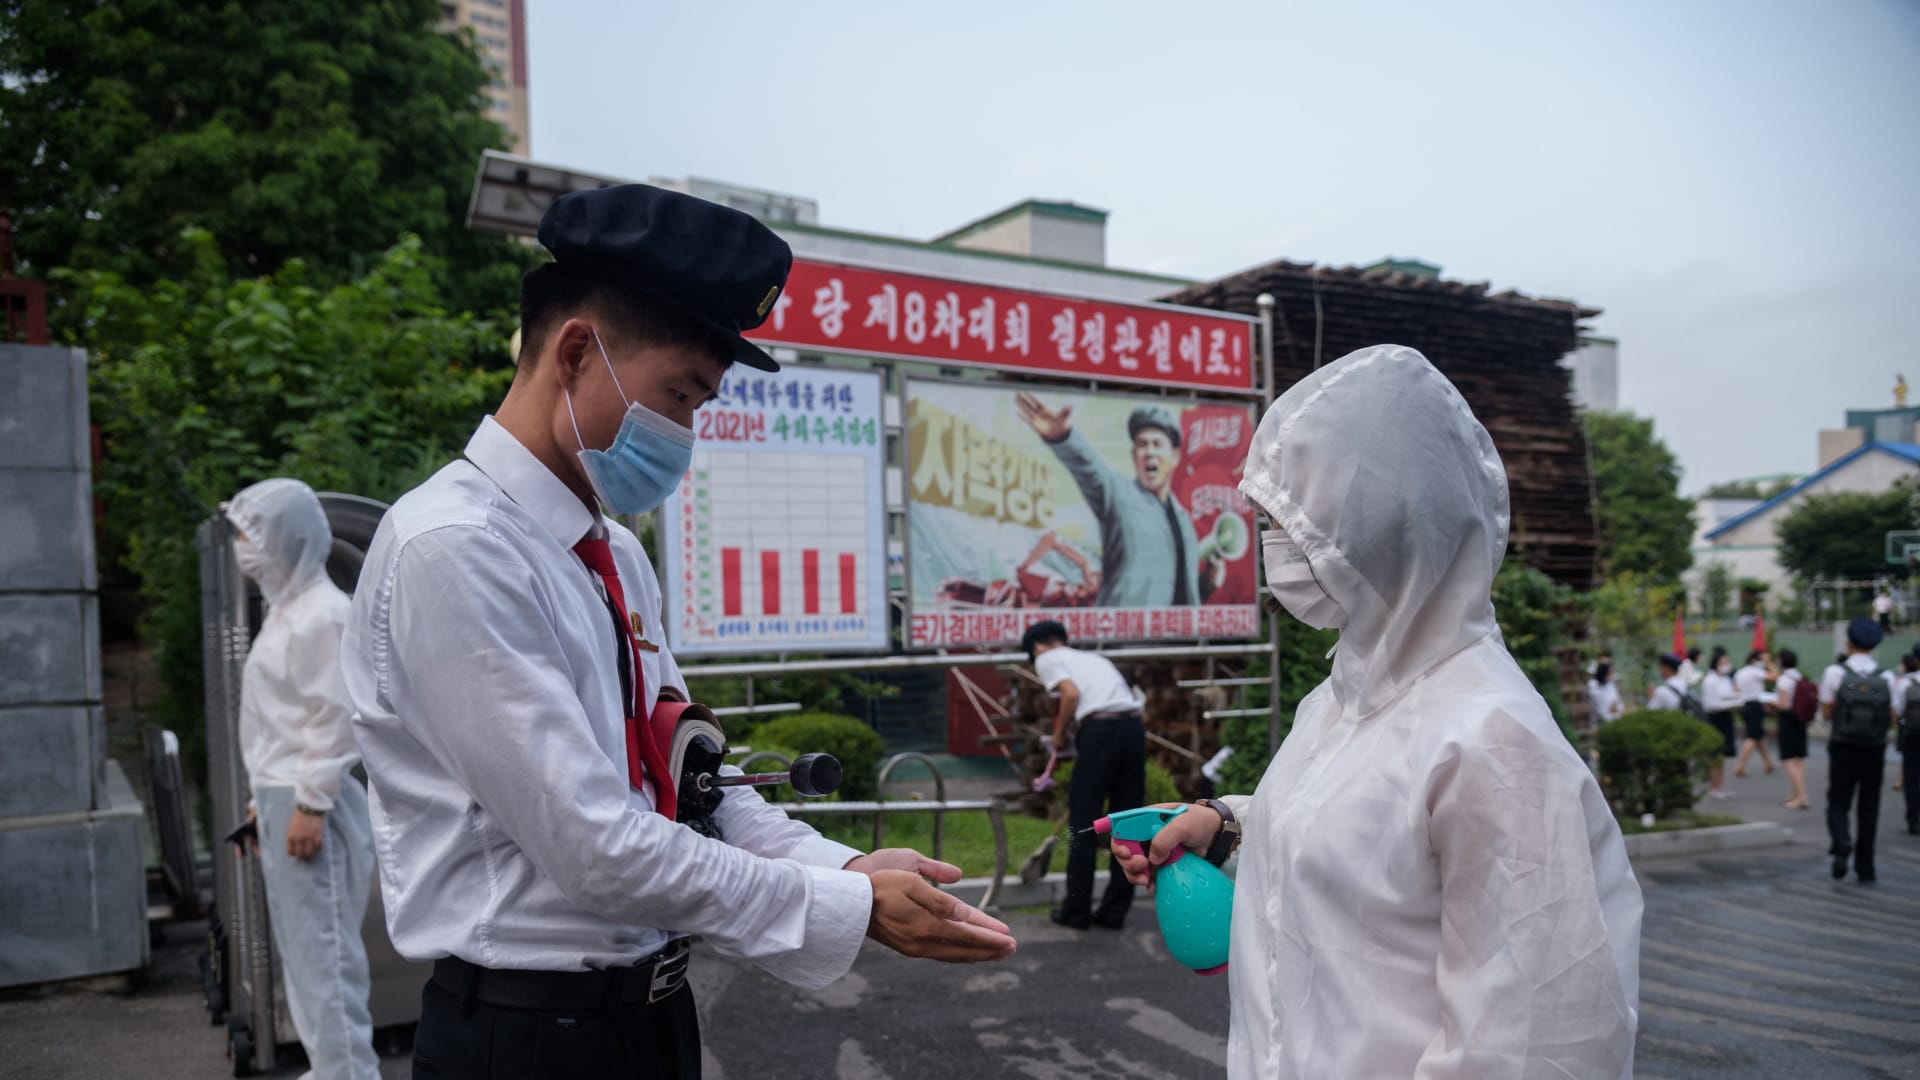 طالب جامعي في بيونغ يانغ يحصل على مطهر يدين قبل دخول الحرم الجامعي